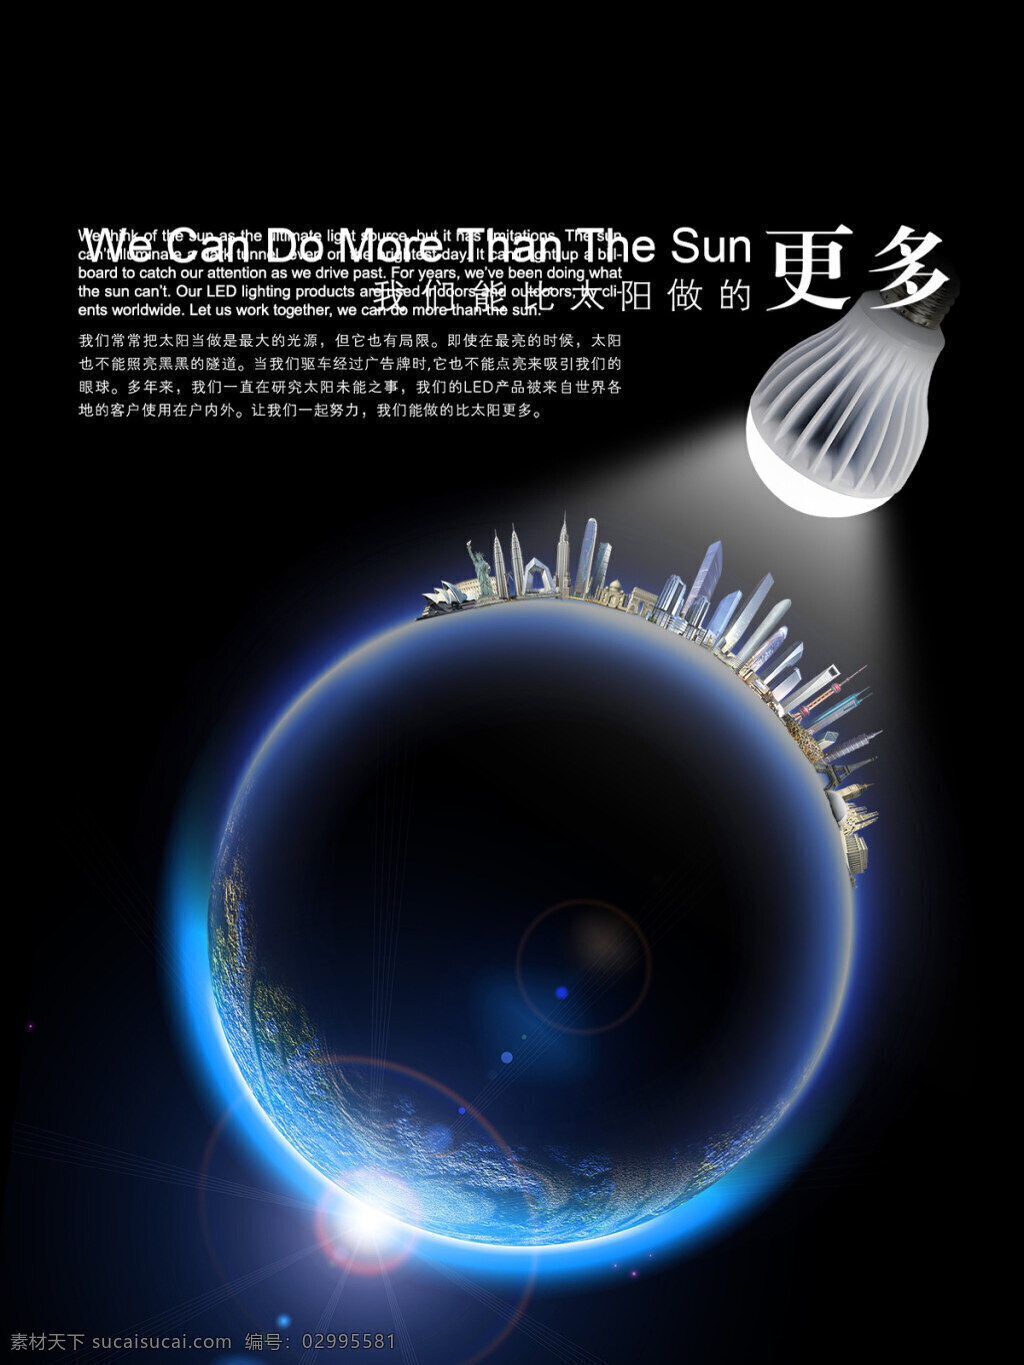 节能灯 创意 广告 地球 设计素材 光效 节能灯广告 创意广告地 地球图片 蓝色星球 海报素材 广告设计模板 psd素材 黑色